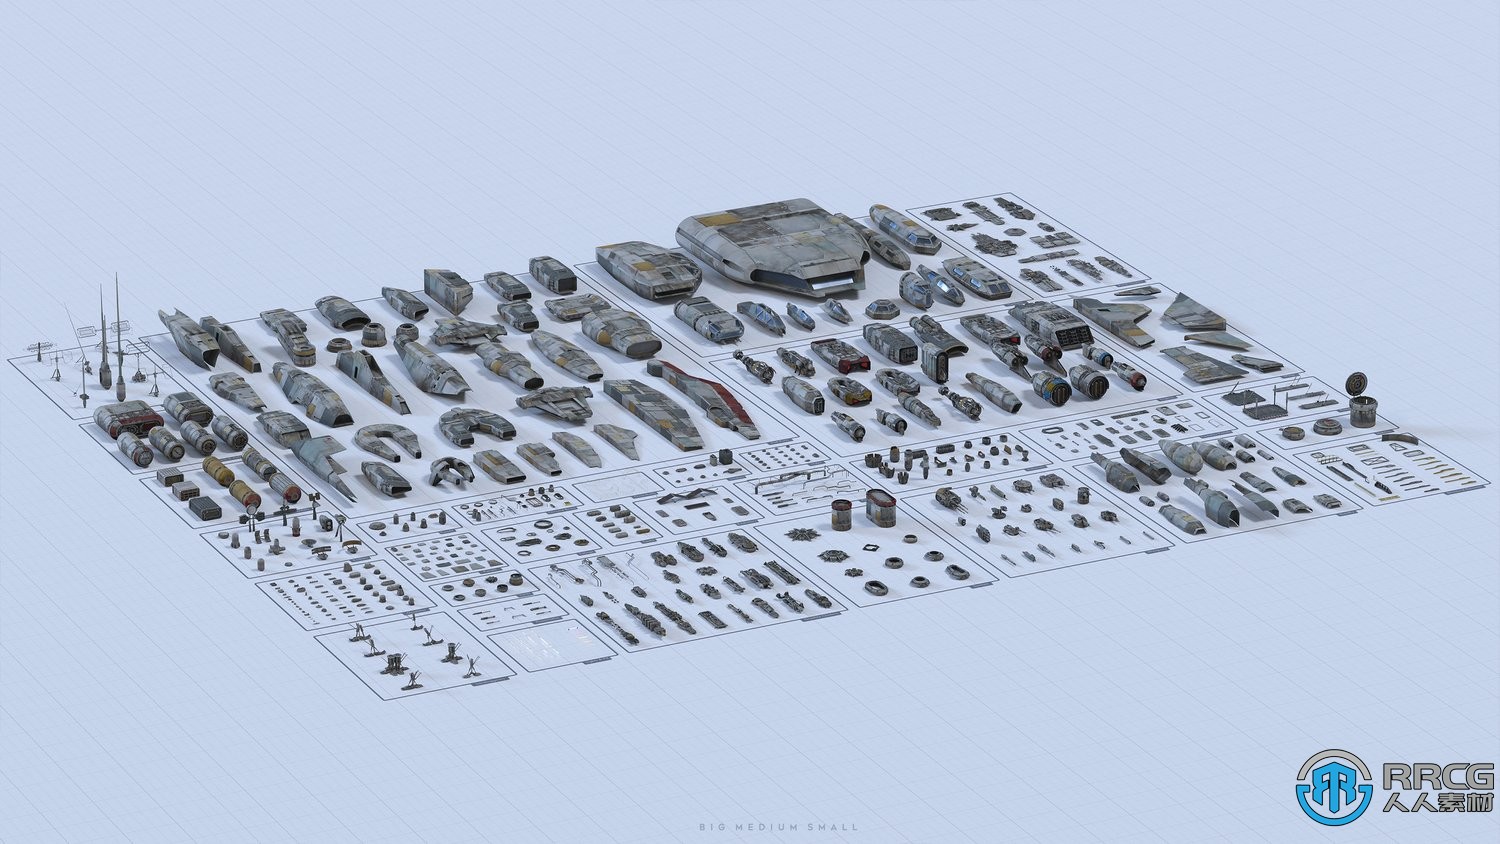 600组完整宇宙飞船星际舰队与相关人员3D模型合集